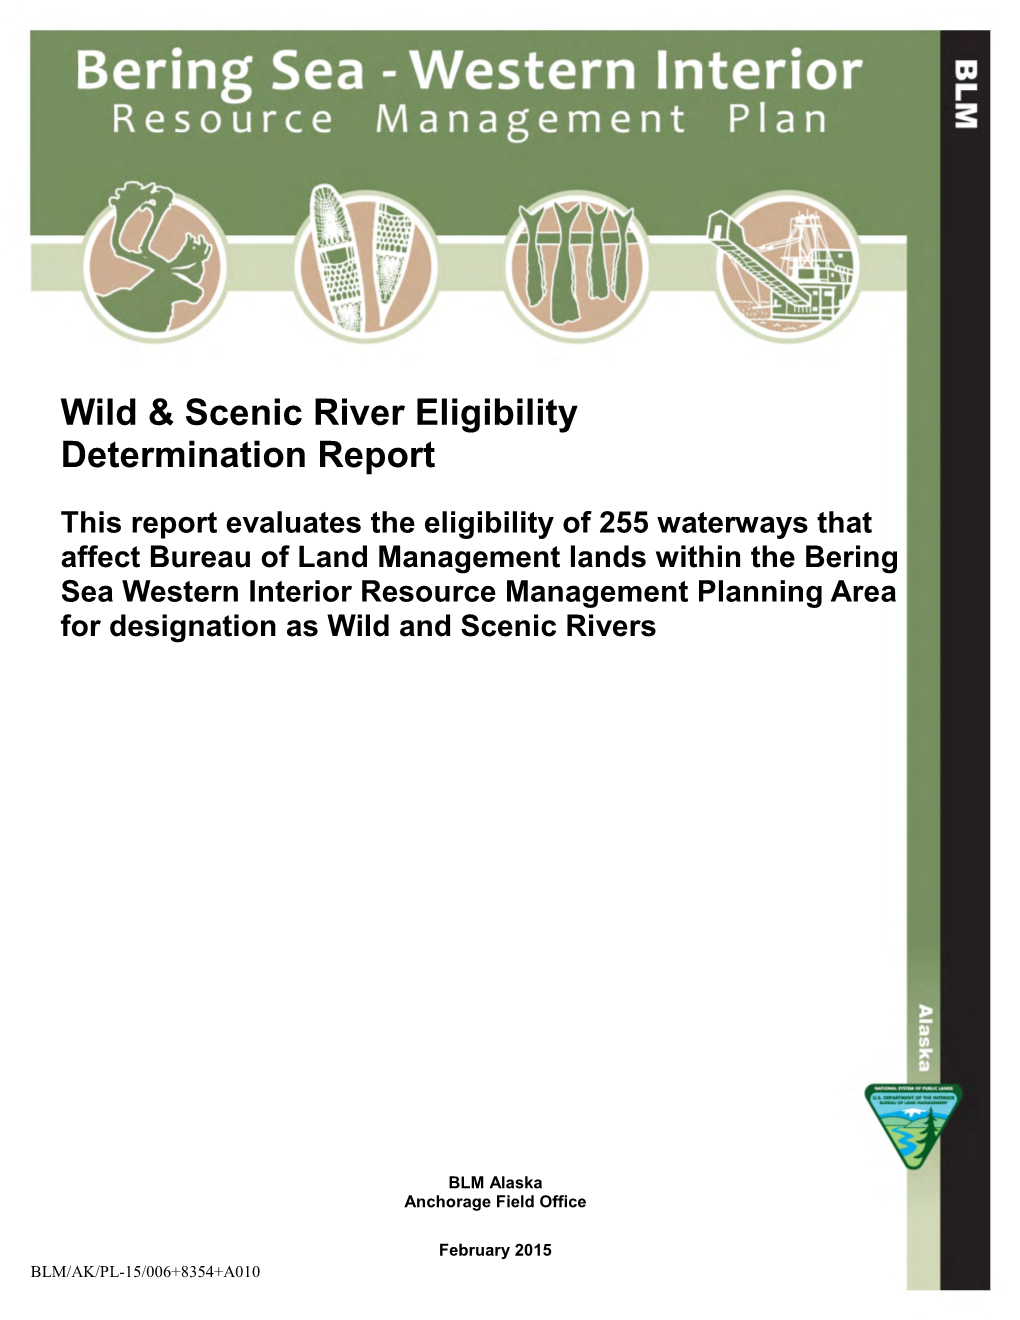 BSWI Wild & Scenic River Eligibility Determination Report